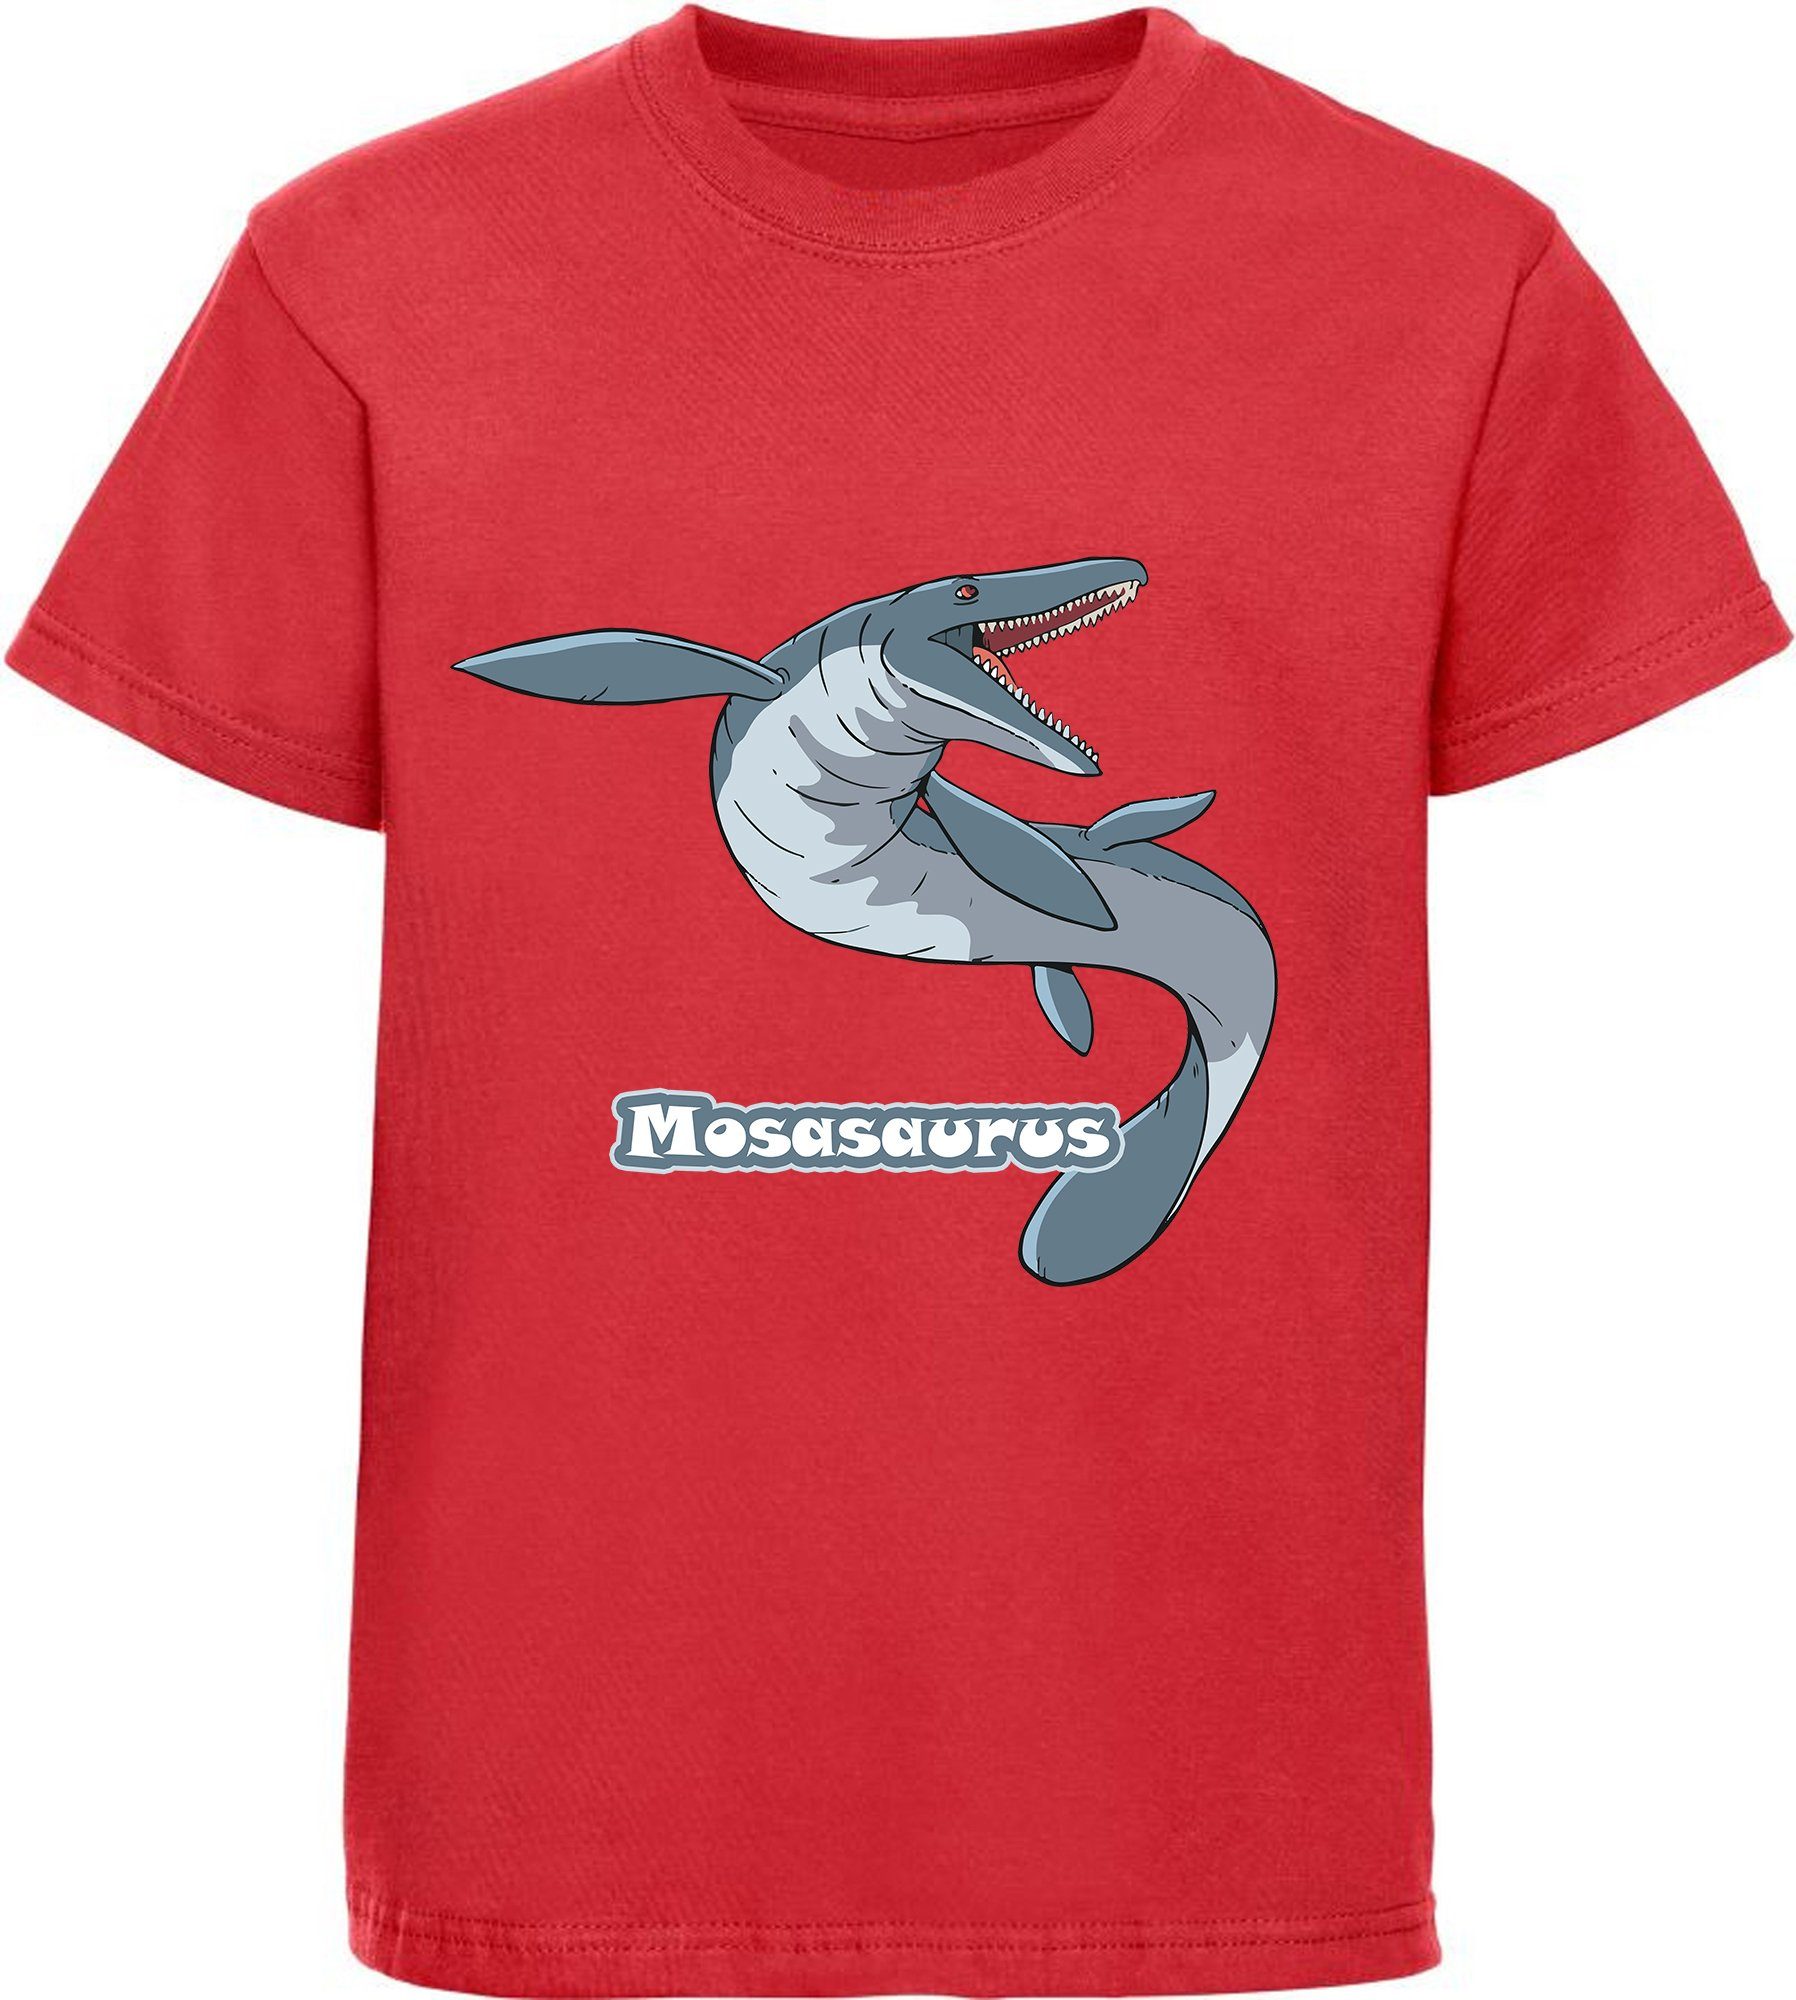 MyDesign24 T-Shirt bedrucktes Kinder T-Shirt mit Mosasaurus 100% Baumwolle mit Dino Aufdruck, rot i51 | T-Shirts